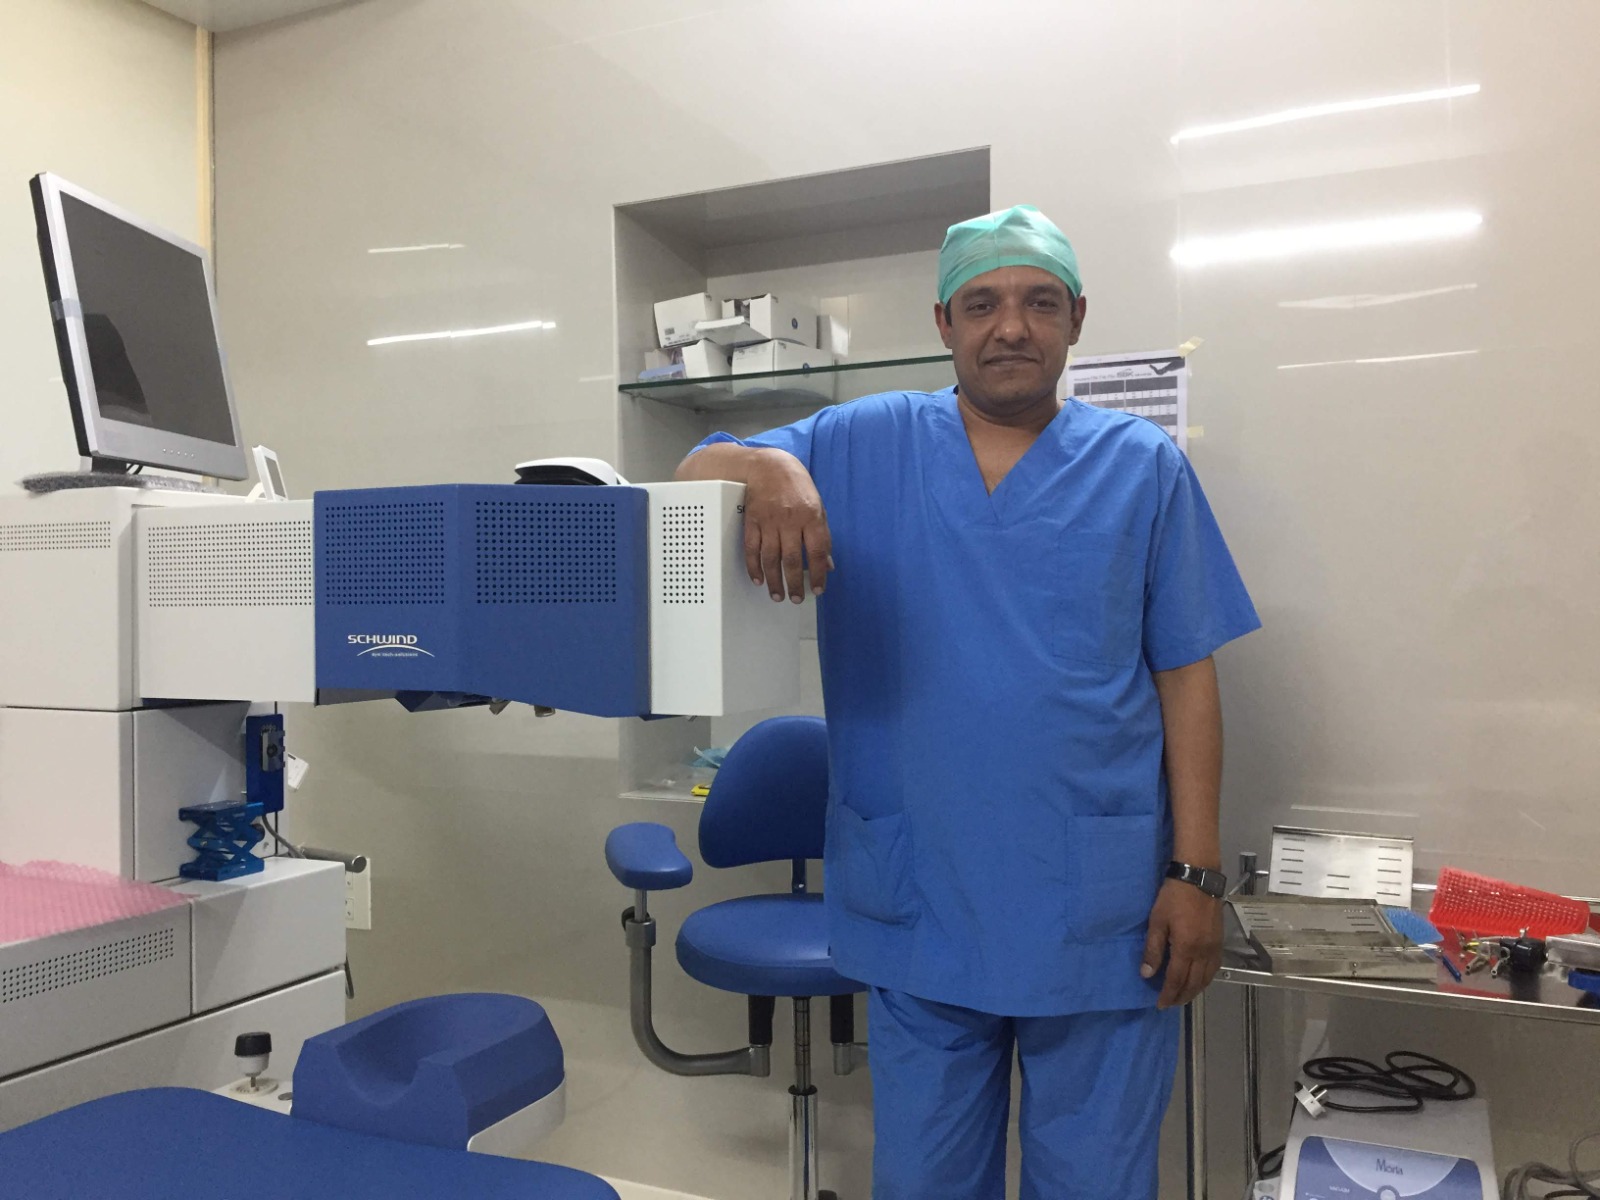 Lasik Surgery In Mumbai